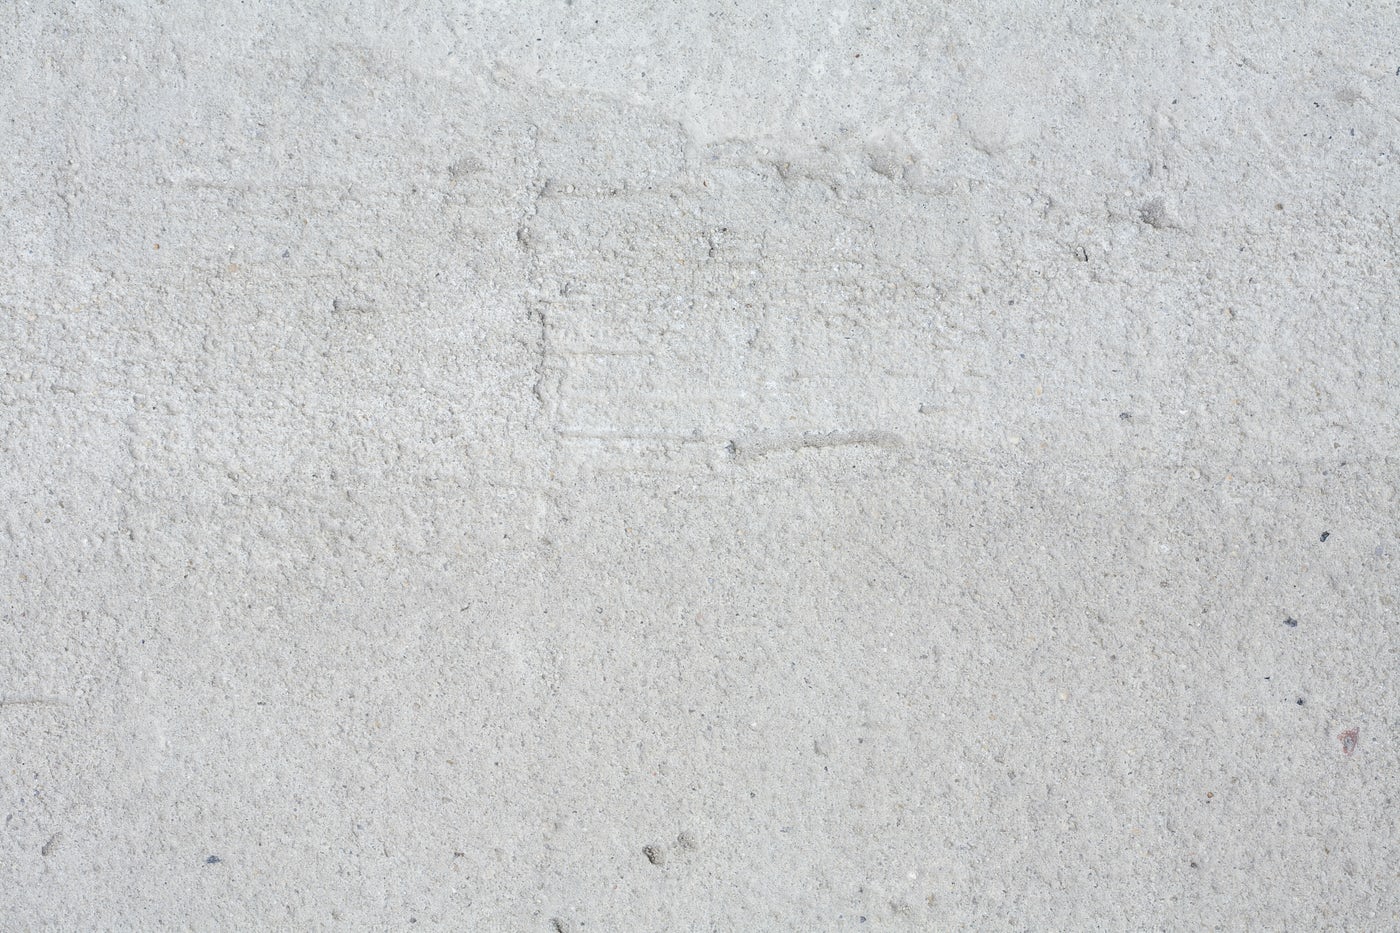  fenyesaszfalt beton és aszfalt keverékek gyártása